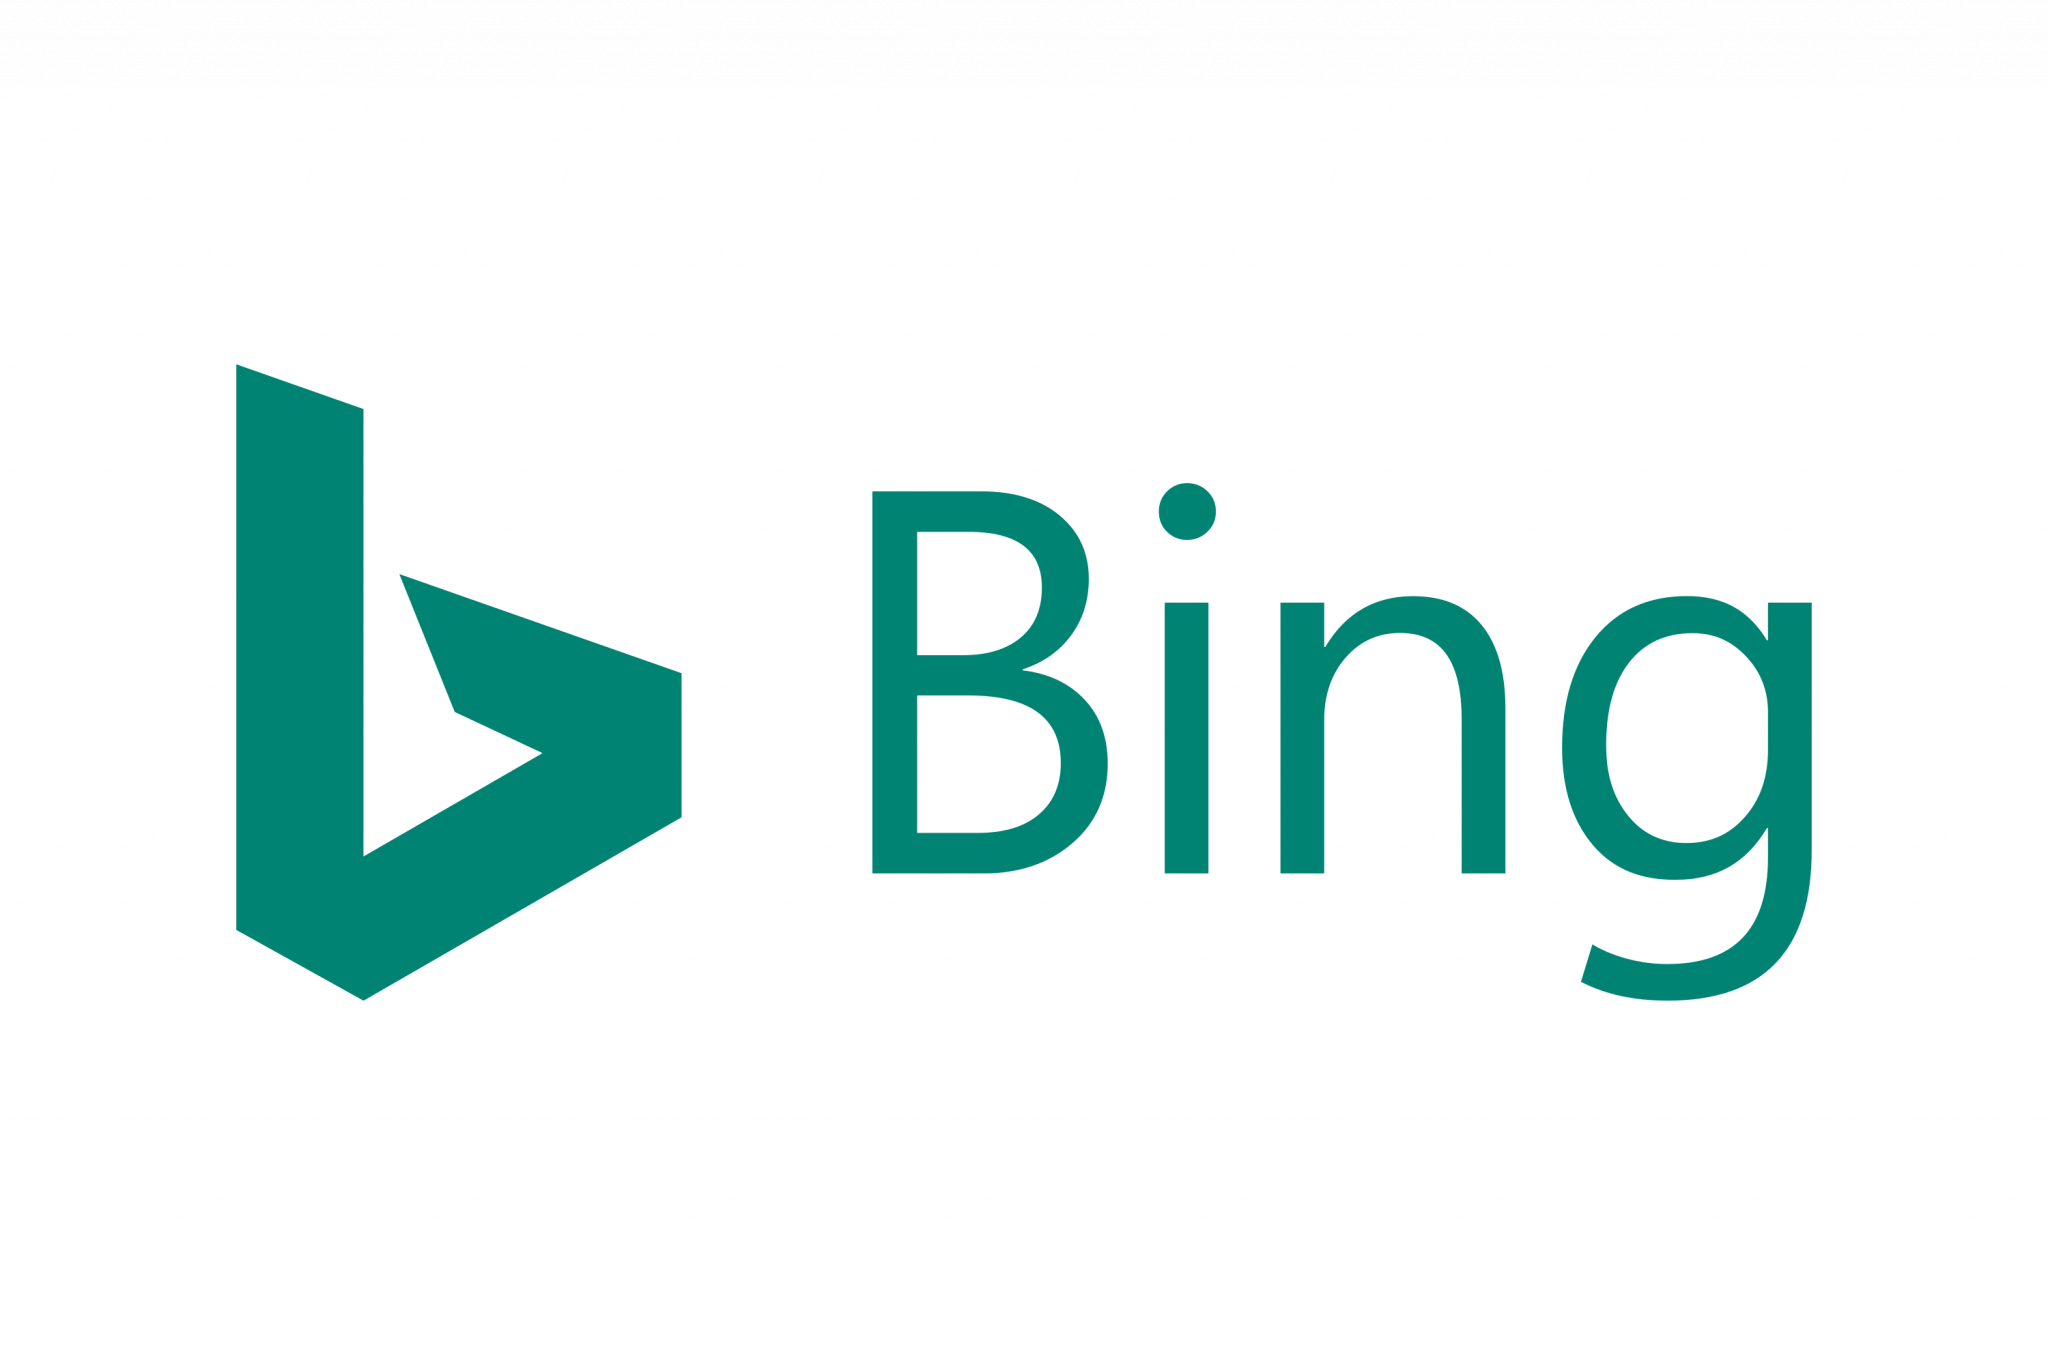 Bing imagine. Bing Поисковая система. Bing логотип. Логотип поисковой системы бинг. Иштппоисковая система.